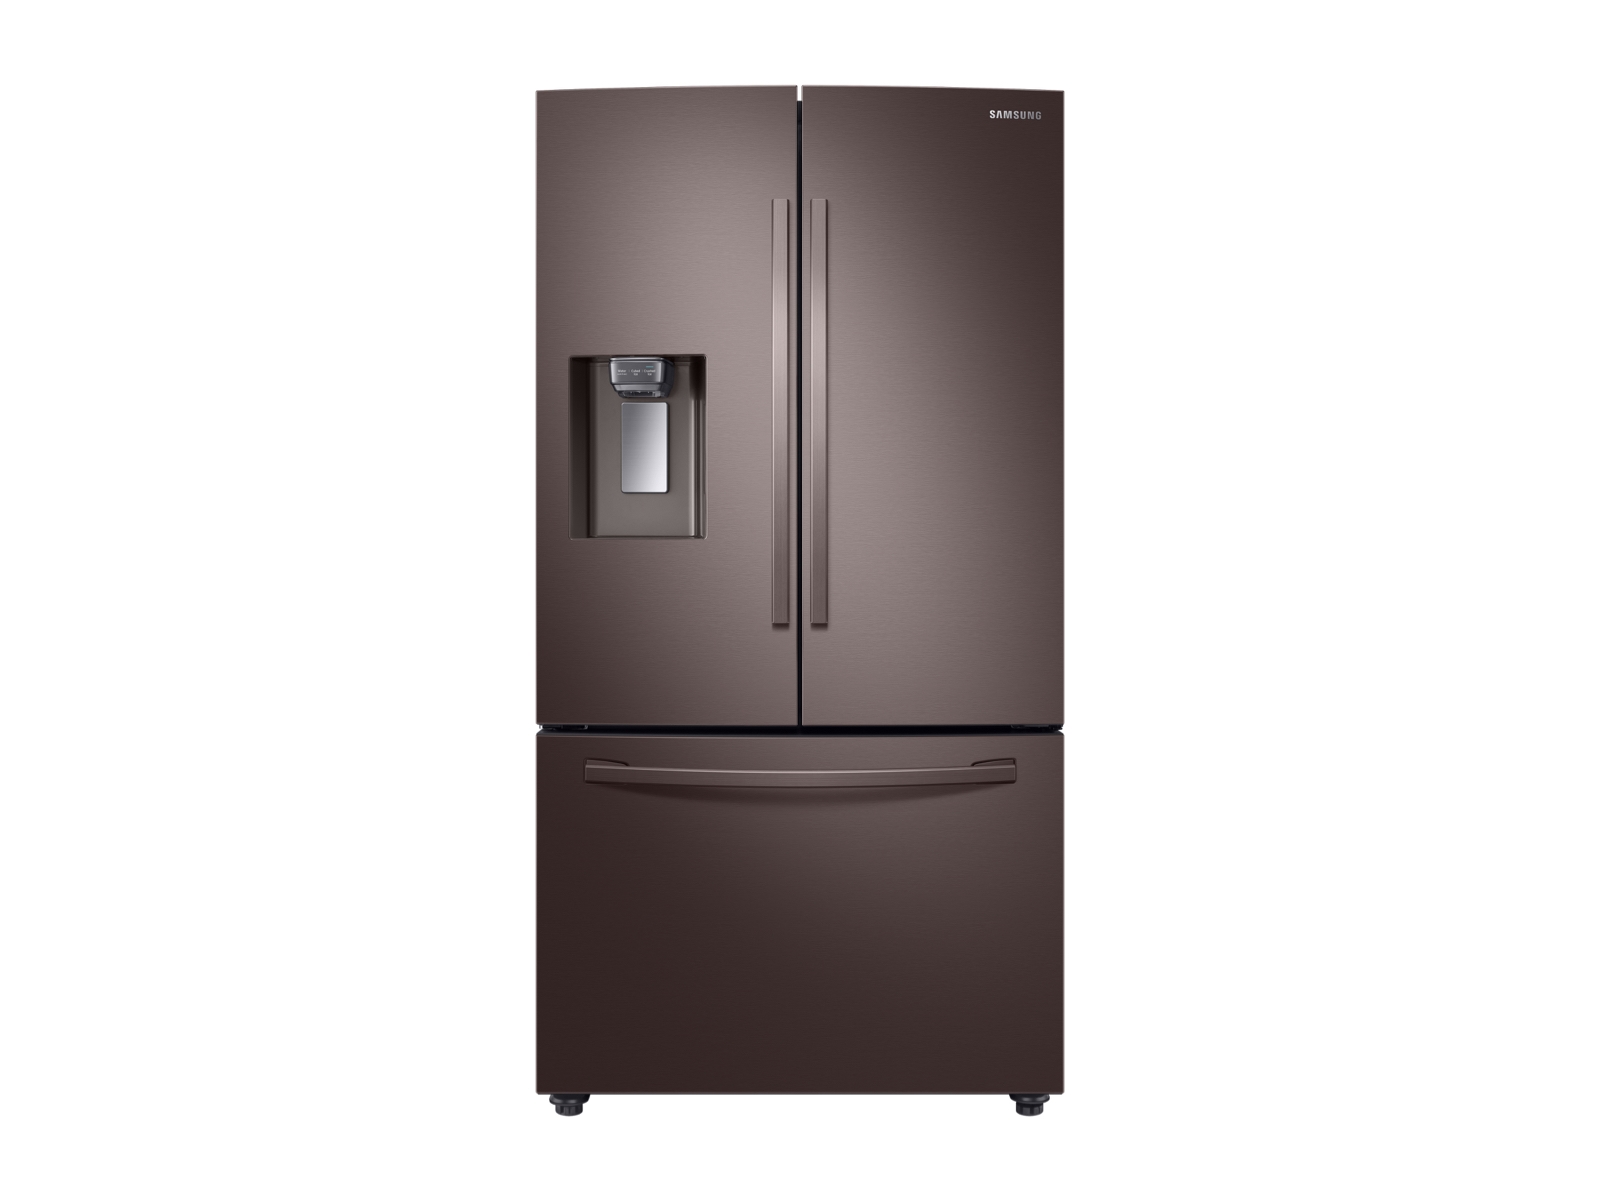 Photos - Fridge Samsung 23 cu. ft. Counter Depth 3-Door French Door Refrigerator with Cool 